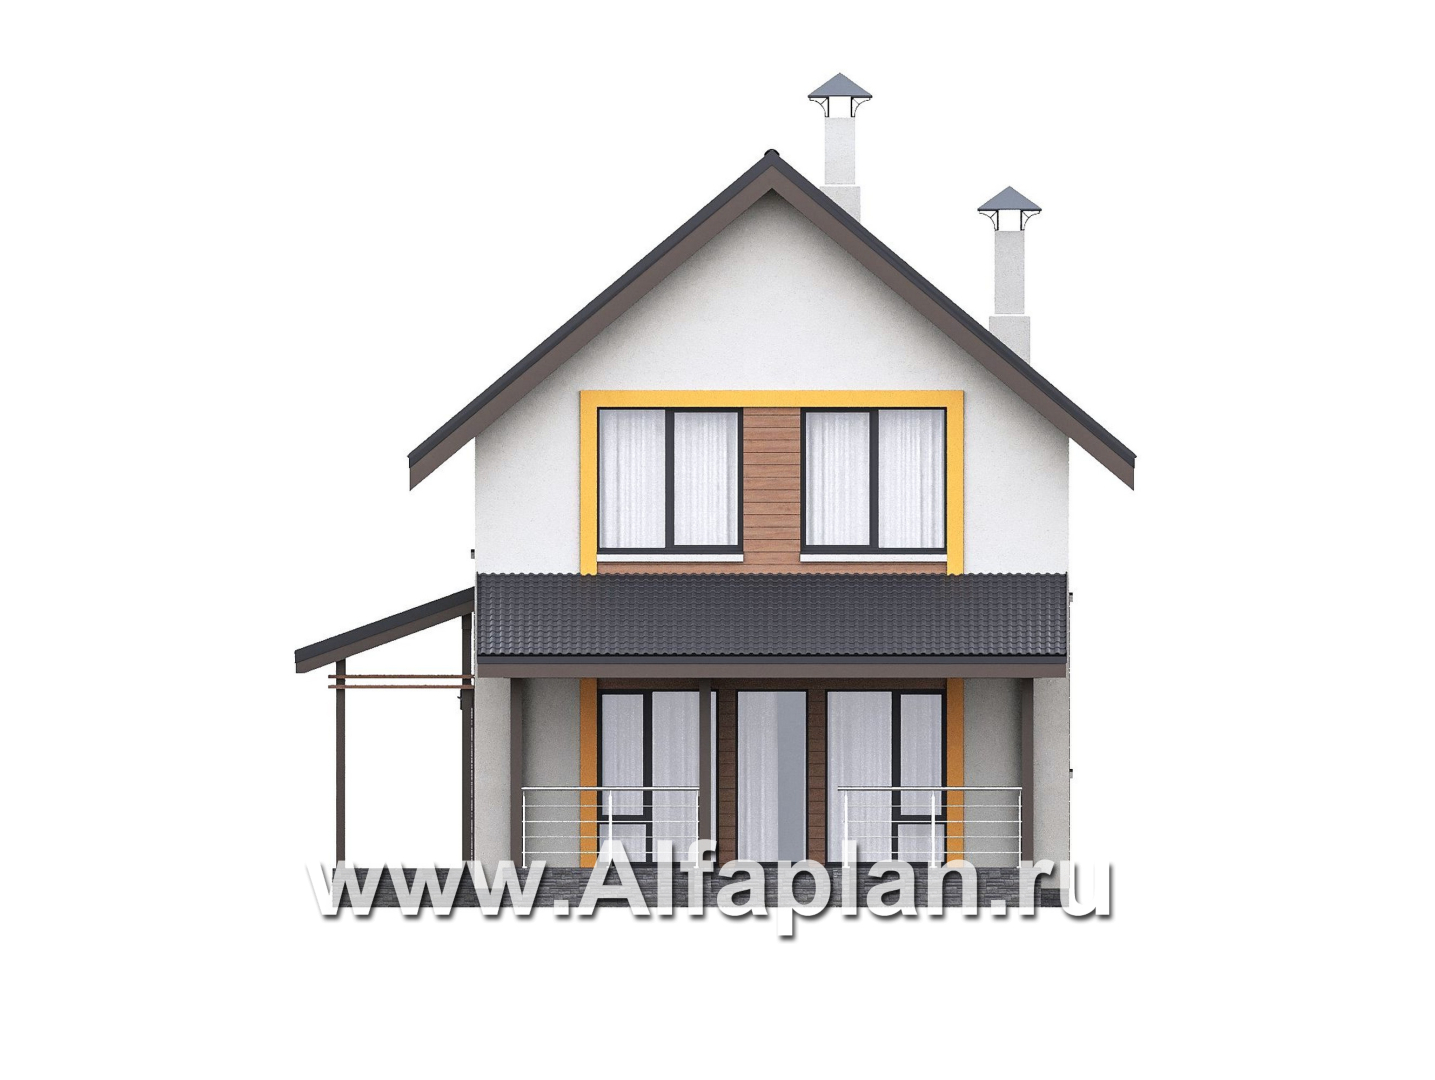 «Викинг» - проект дома, 2 этажа, с сауной и с террасой, в скандинавском стиле - фасад дома